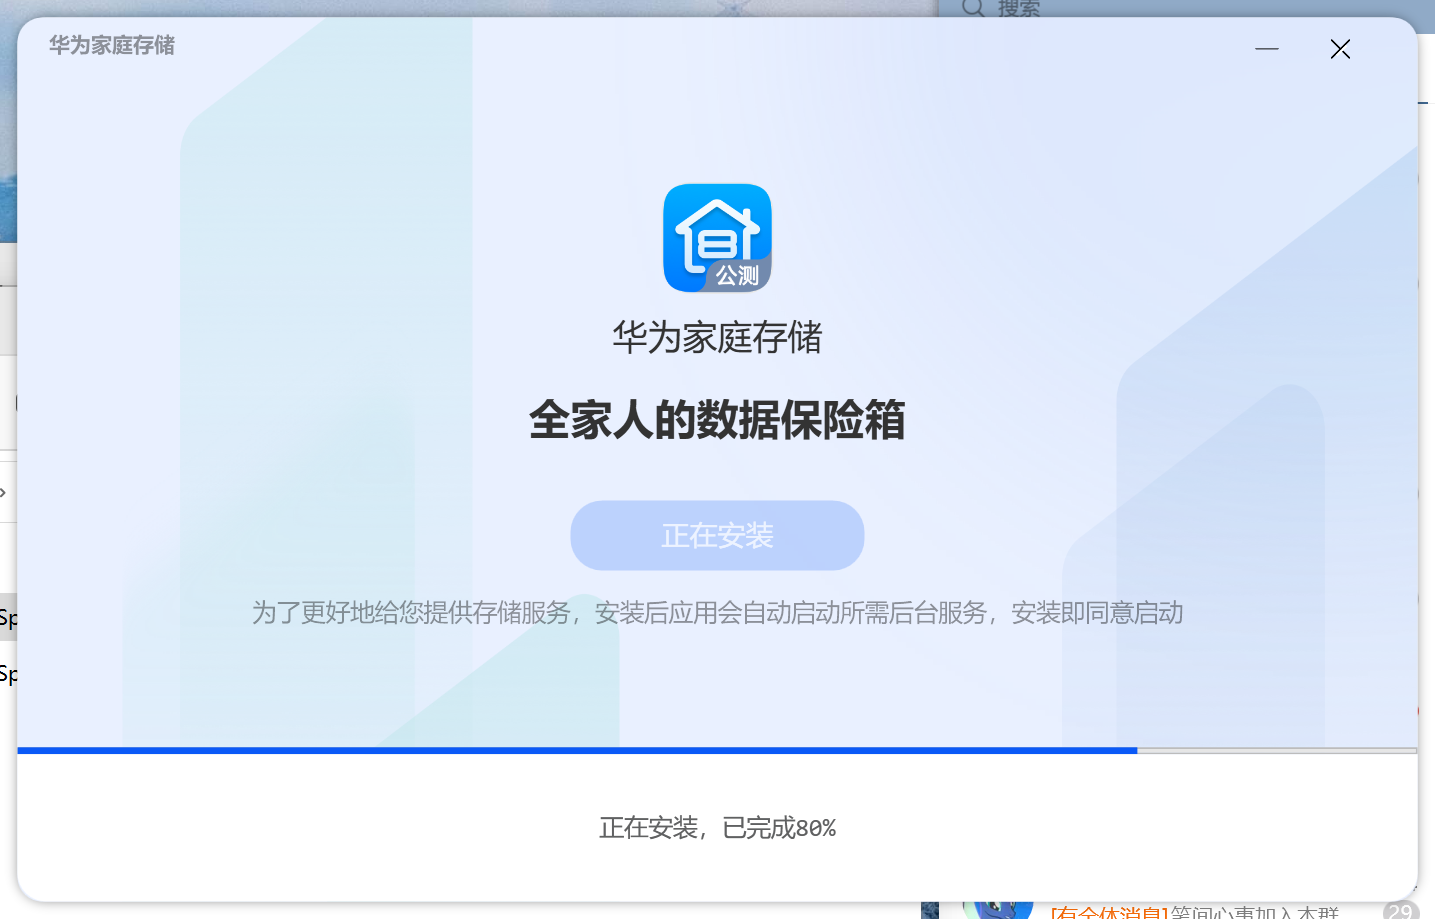 华为家庭存储 PC客户端 3.0.0.309 公测版 截图